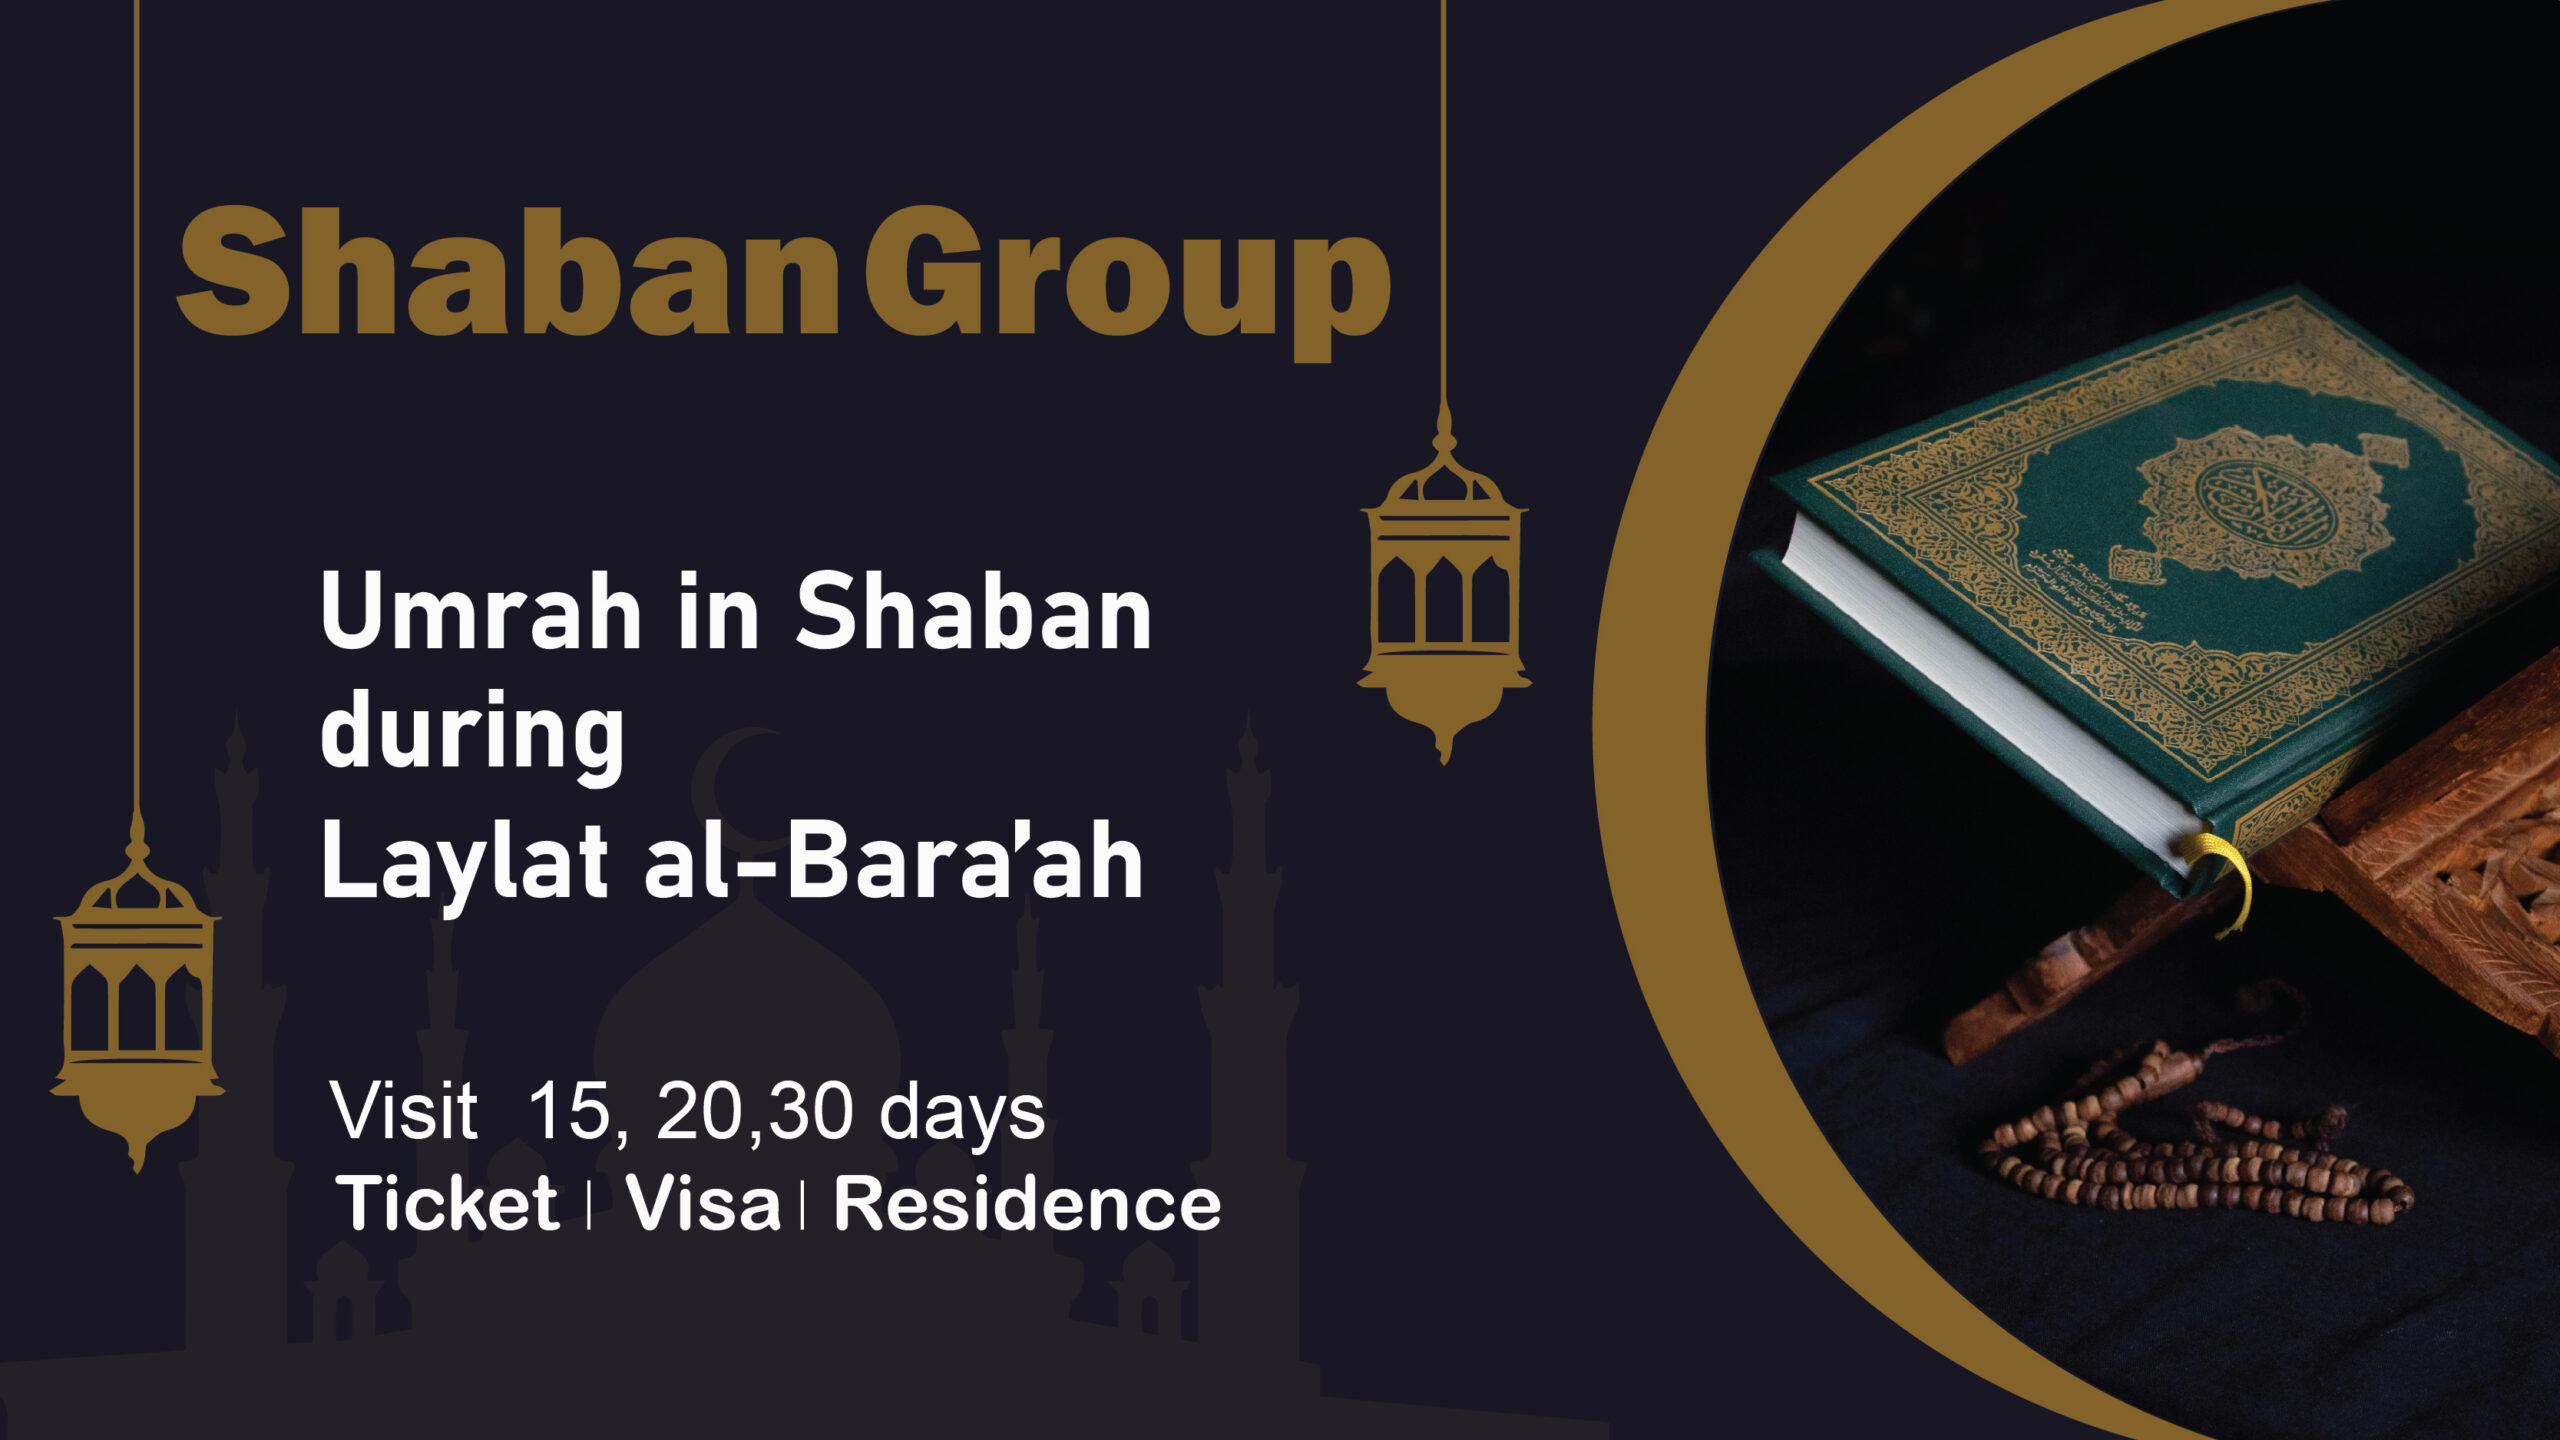 Shaban Group